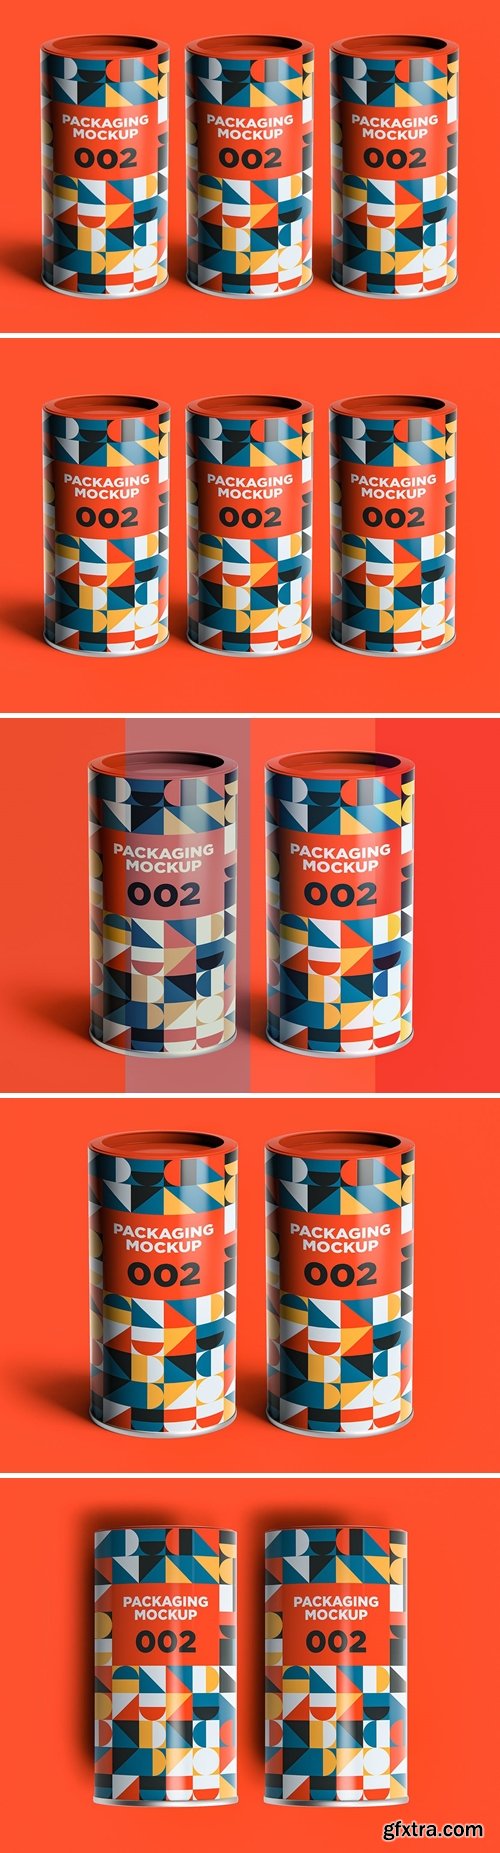 Packaging Mockup 002